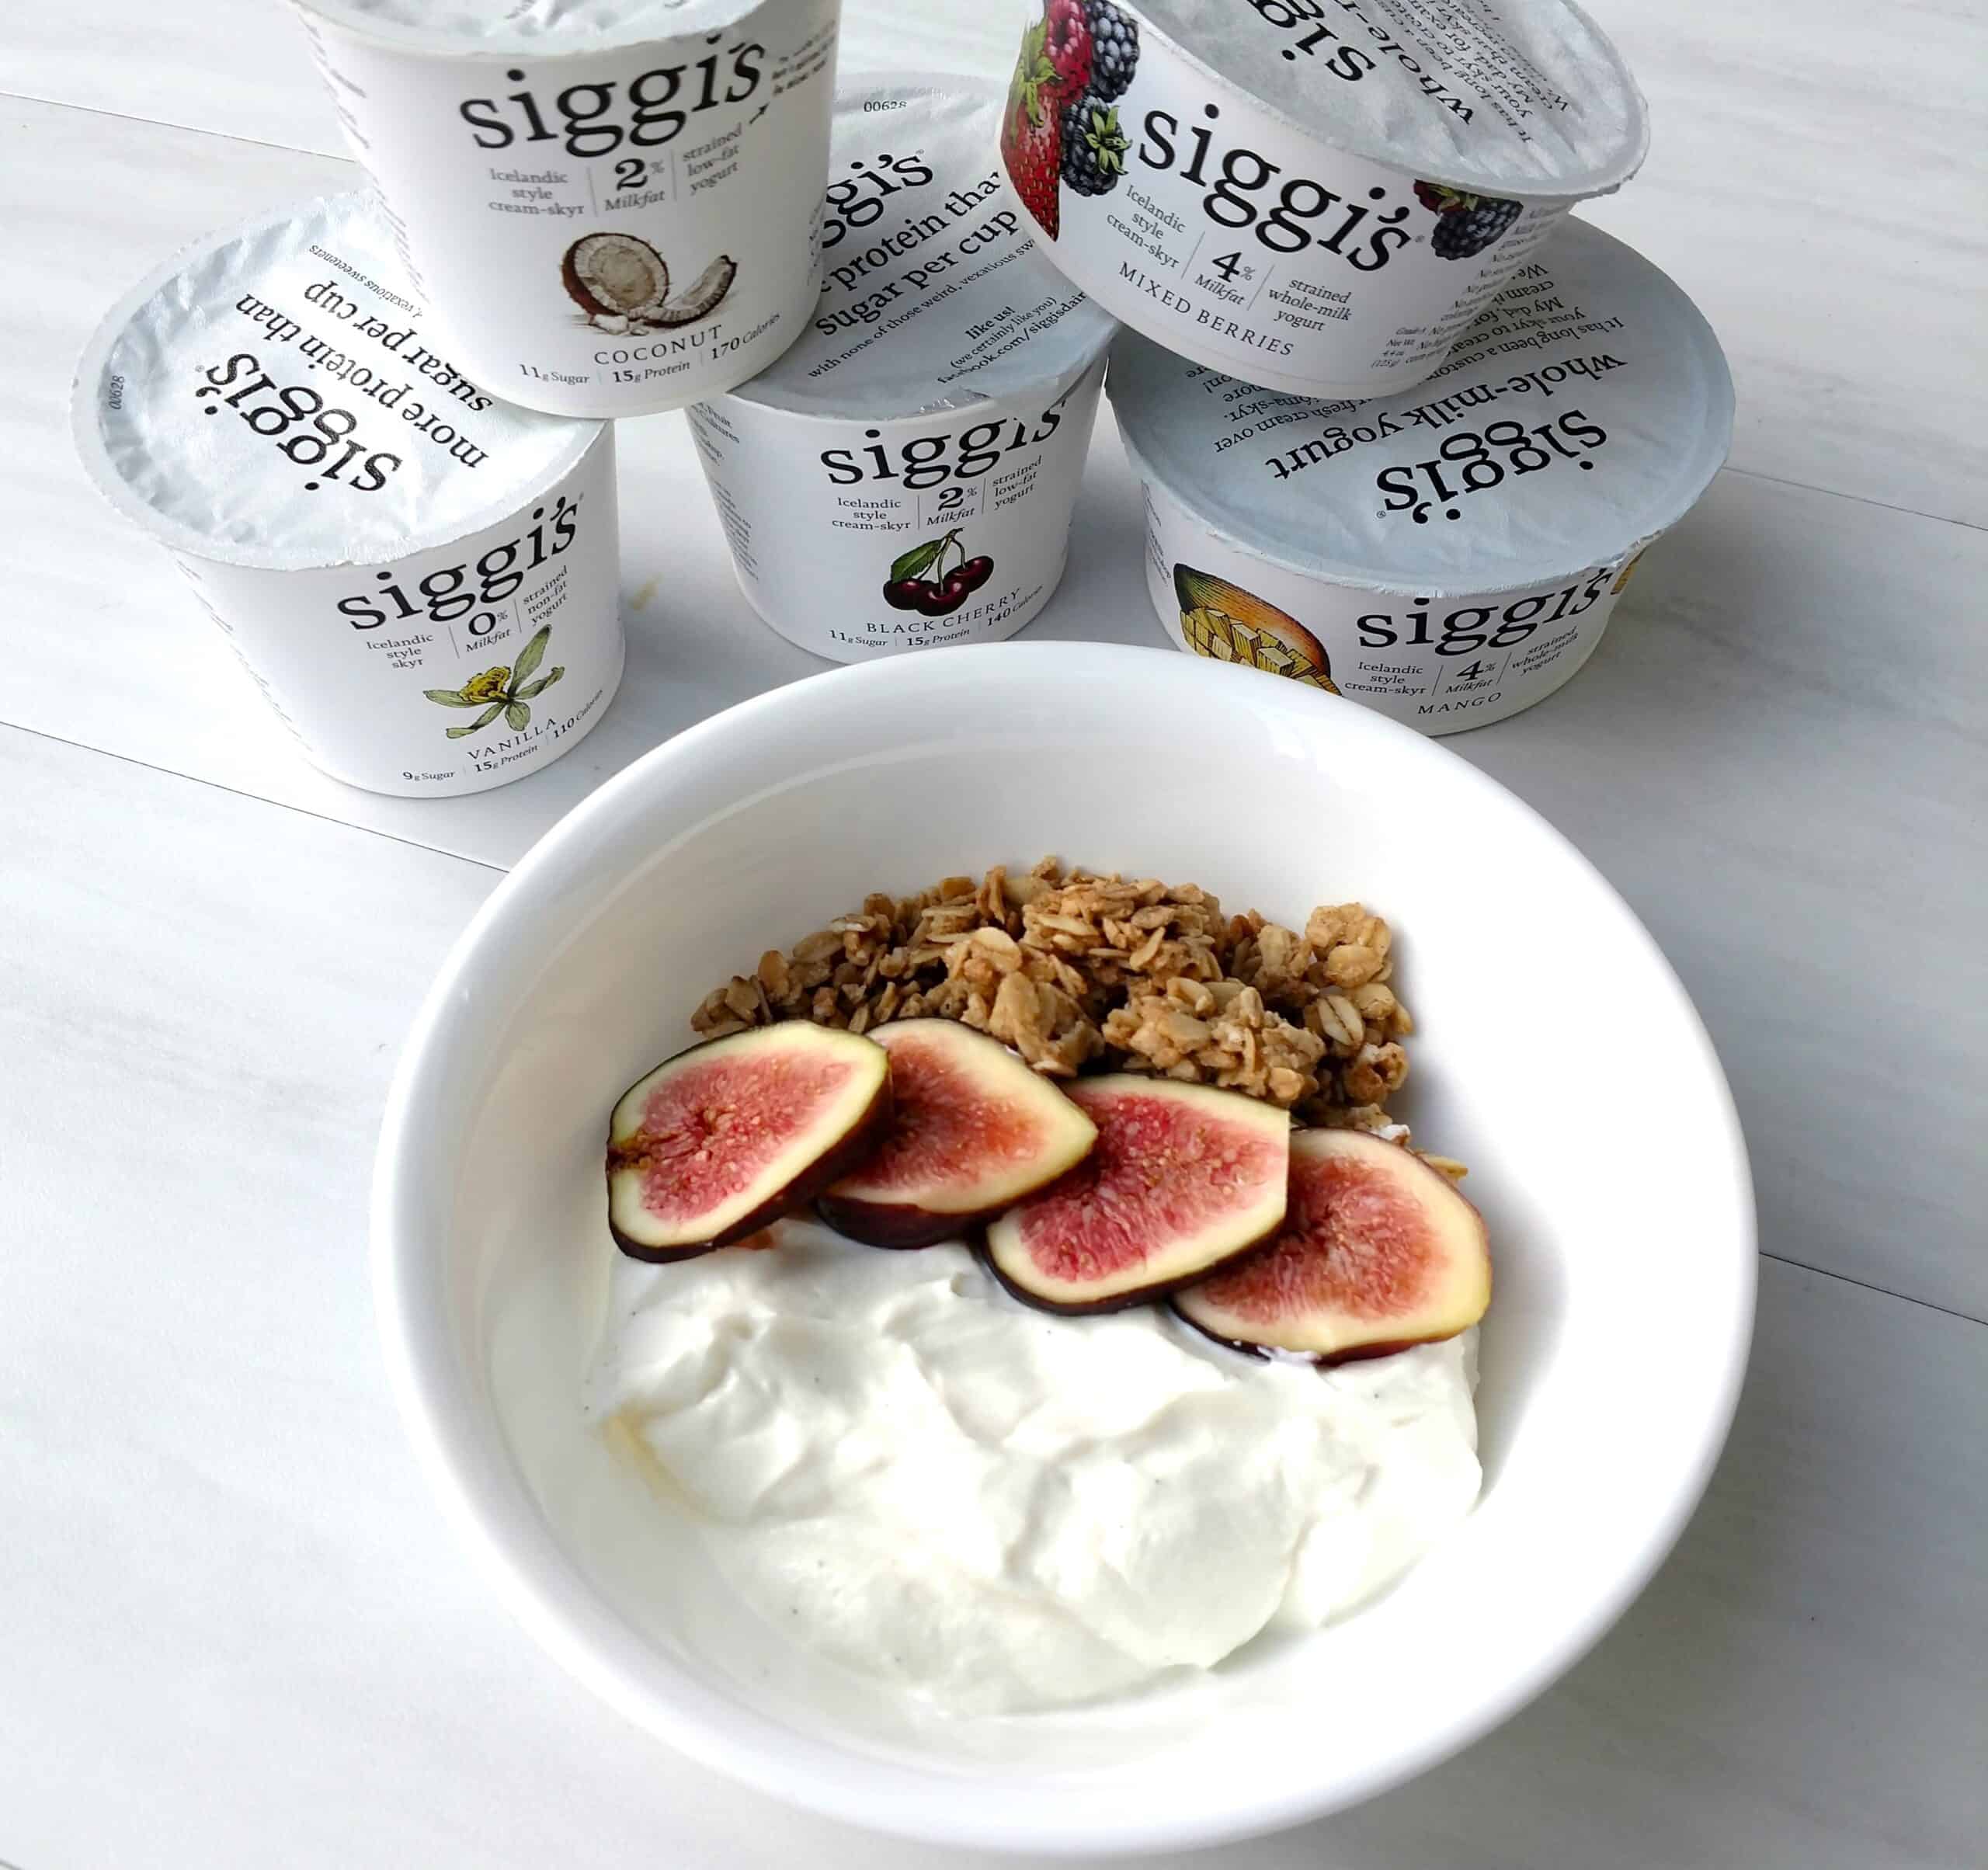 A bowl of Siggi's yogurt topped with figs.